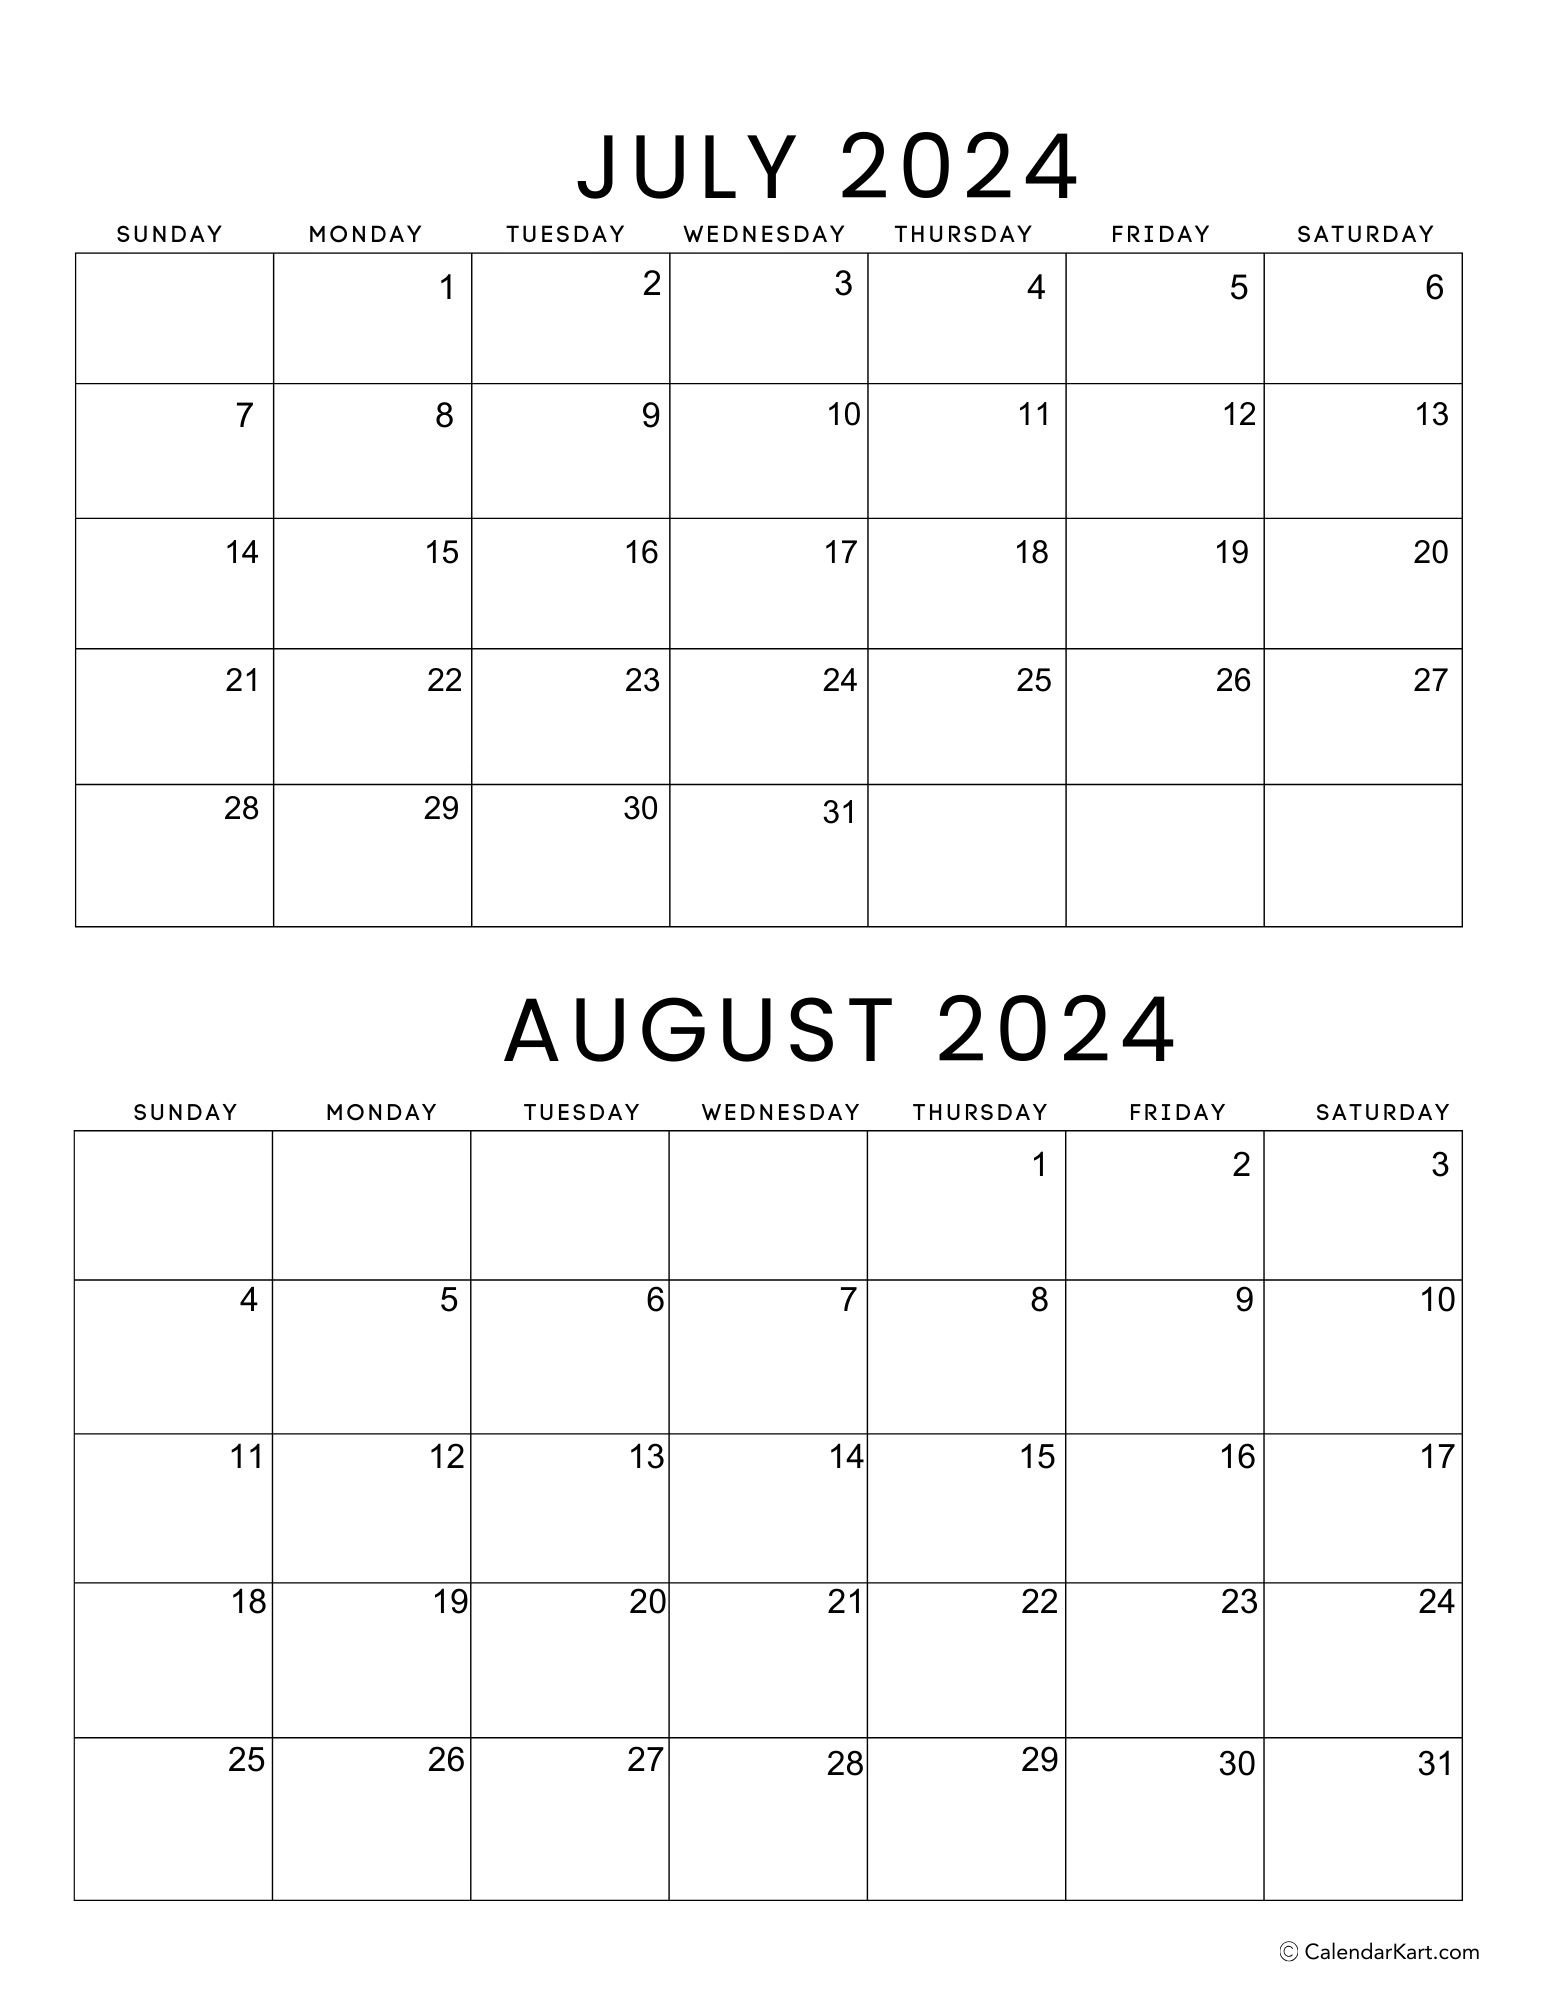 Printable July August 2024 Calendar | Calendarkart inside 2024 Calendar July And August